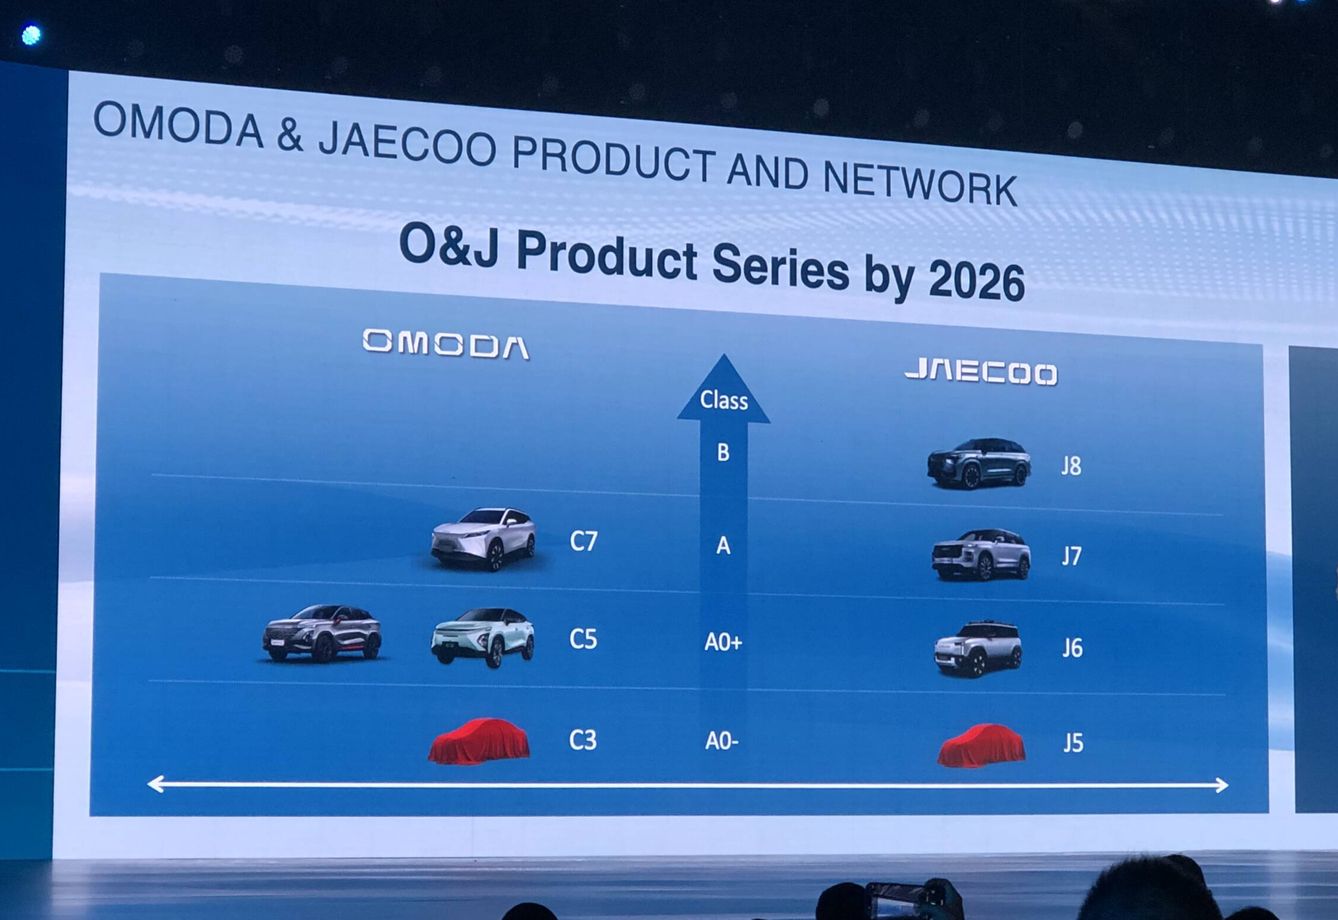 La gama para Europa de Omoda y Jaecoo estará formada por ocho modelos, cuatro de cada marca.